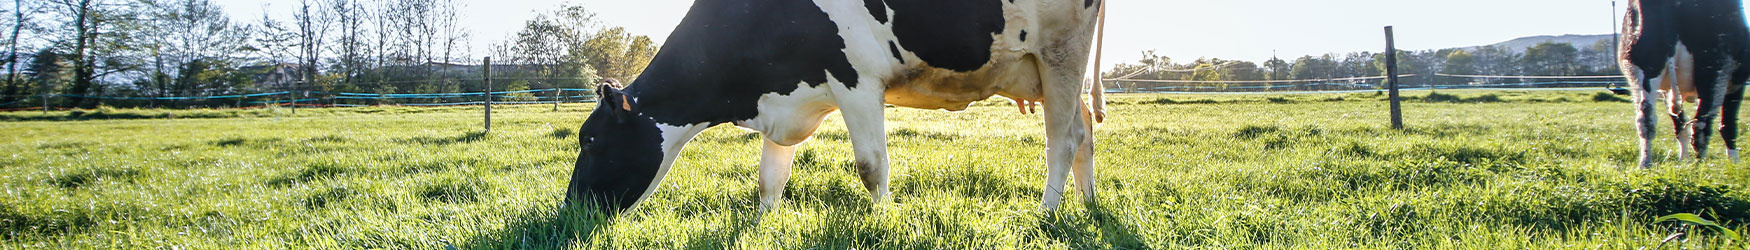 Une vache normande dans un champs